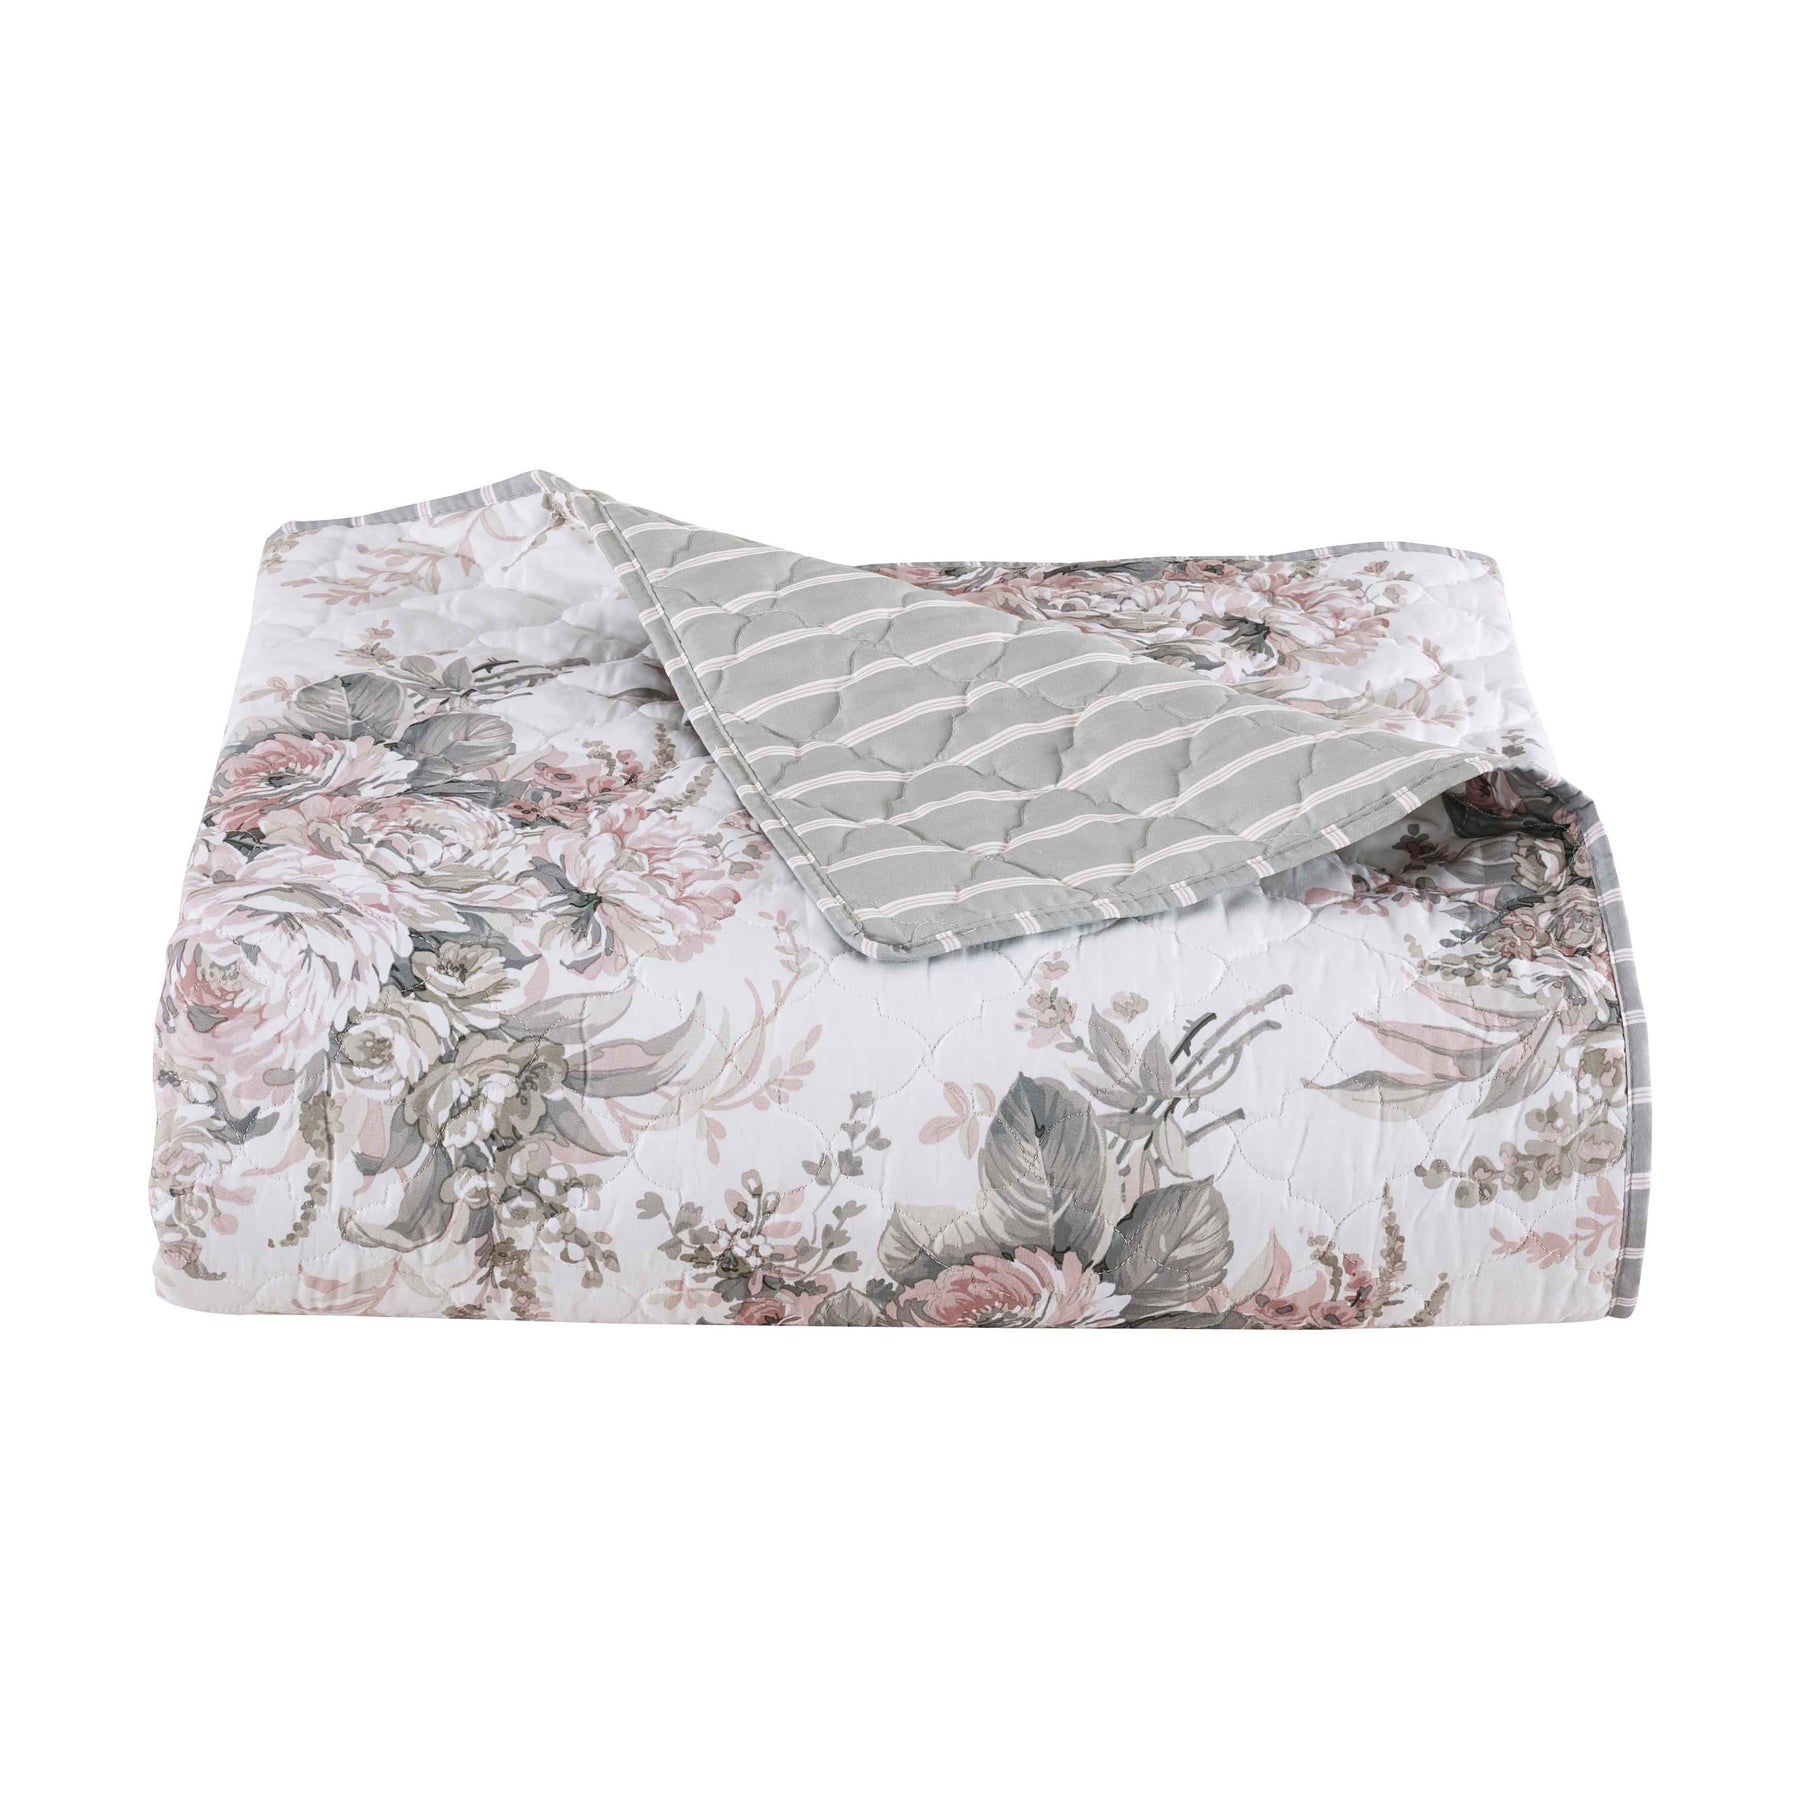 Royal Court Estelle Blush 3-Piece Quilt Set – Latest Bedding